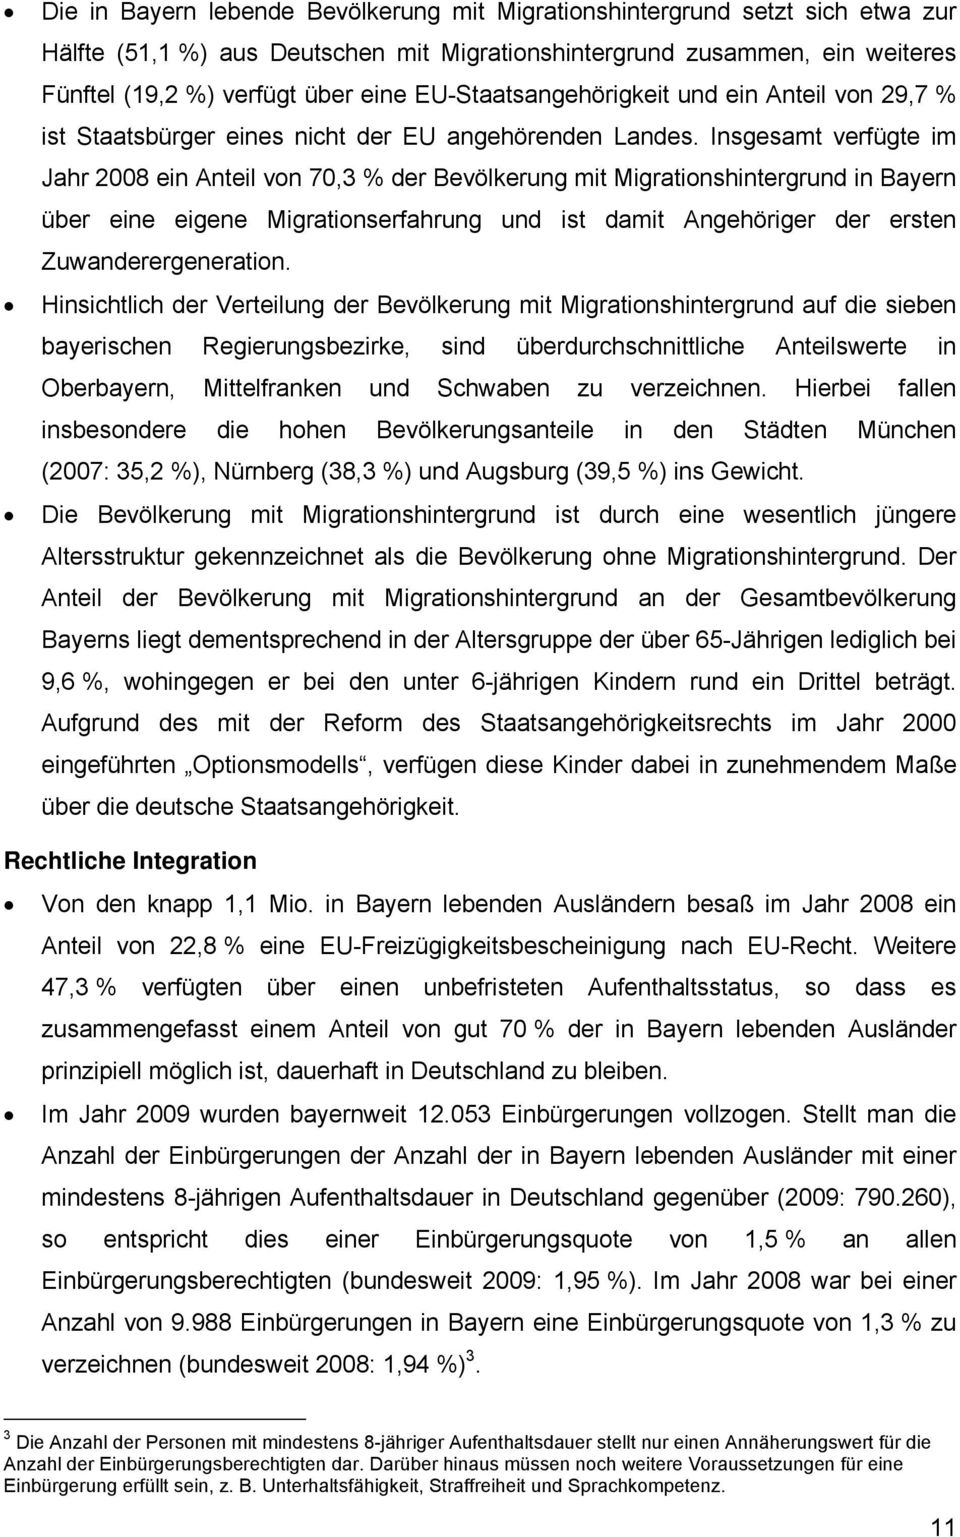 Insgesamt verfügte im Jahr 2008 ein Anteil von 70,3 % der Bevölkerung mit Migrationshintergrund in Bayern über eine eigene Migrationserfahrung und ist damit Angehöriger der ersten